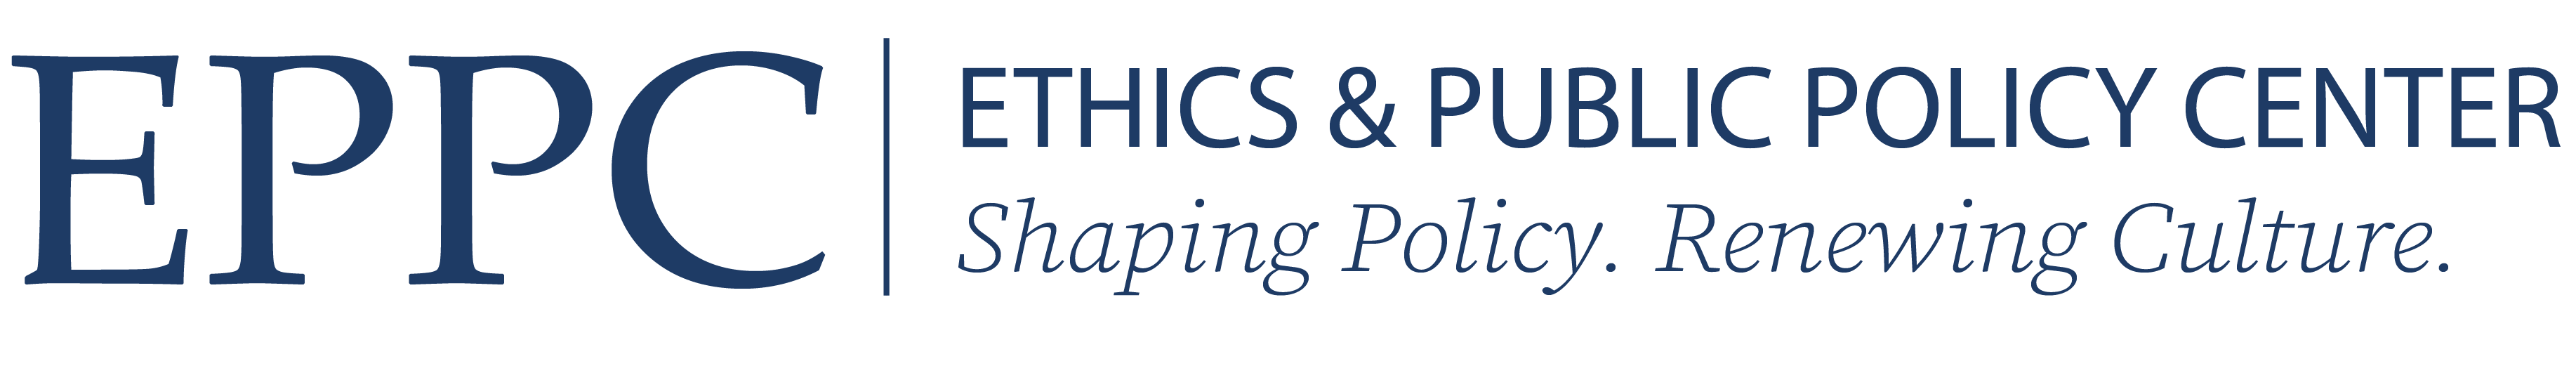 eppc-header-logo-blue